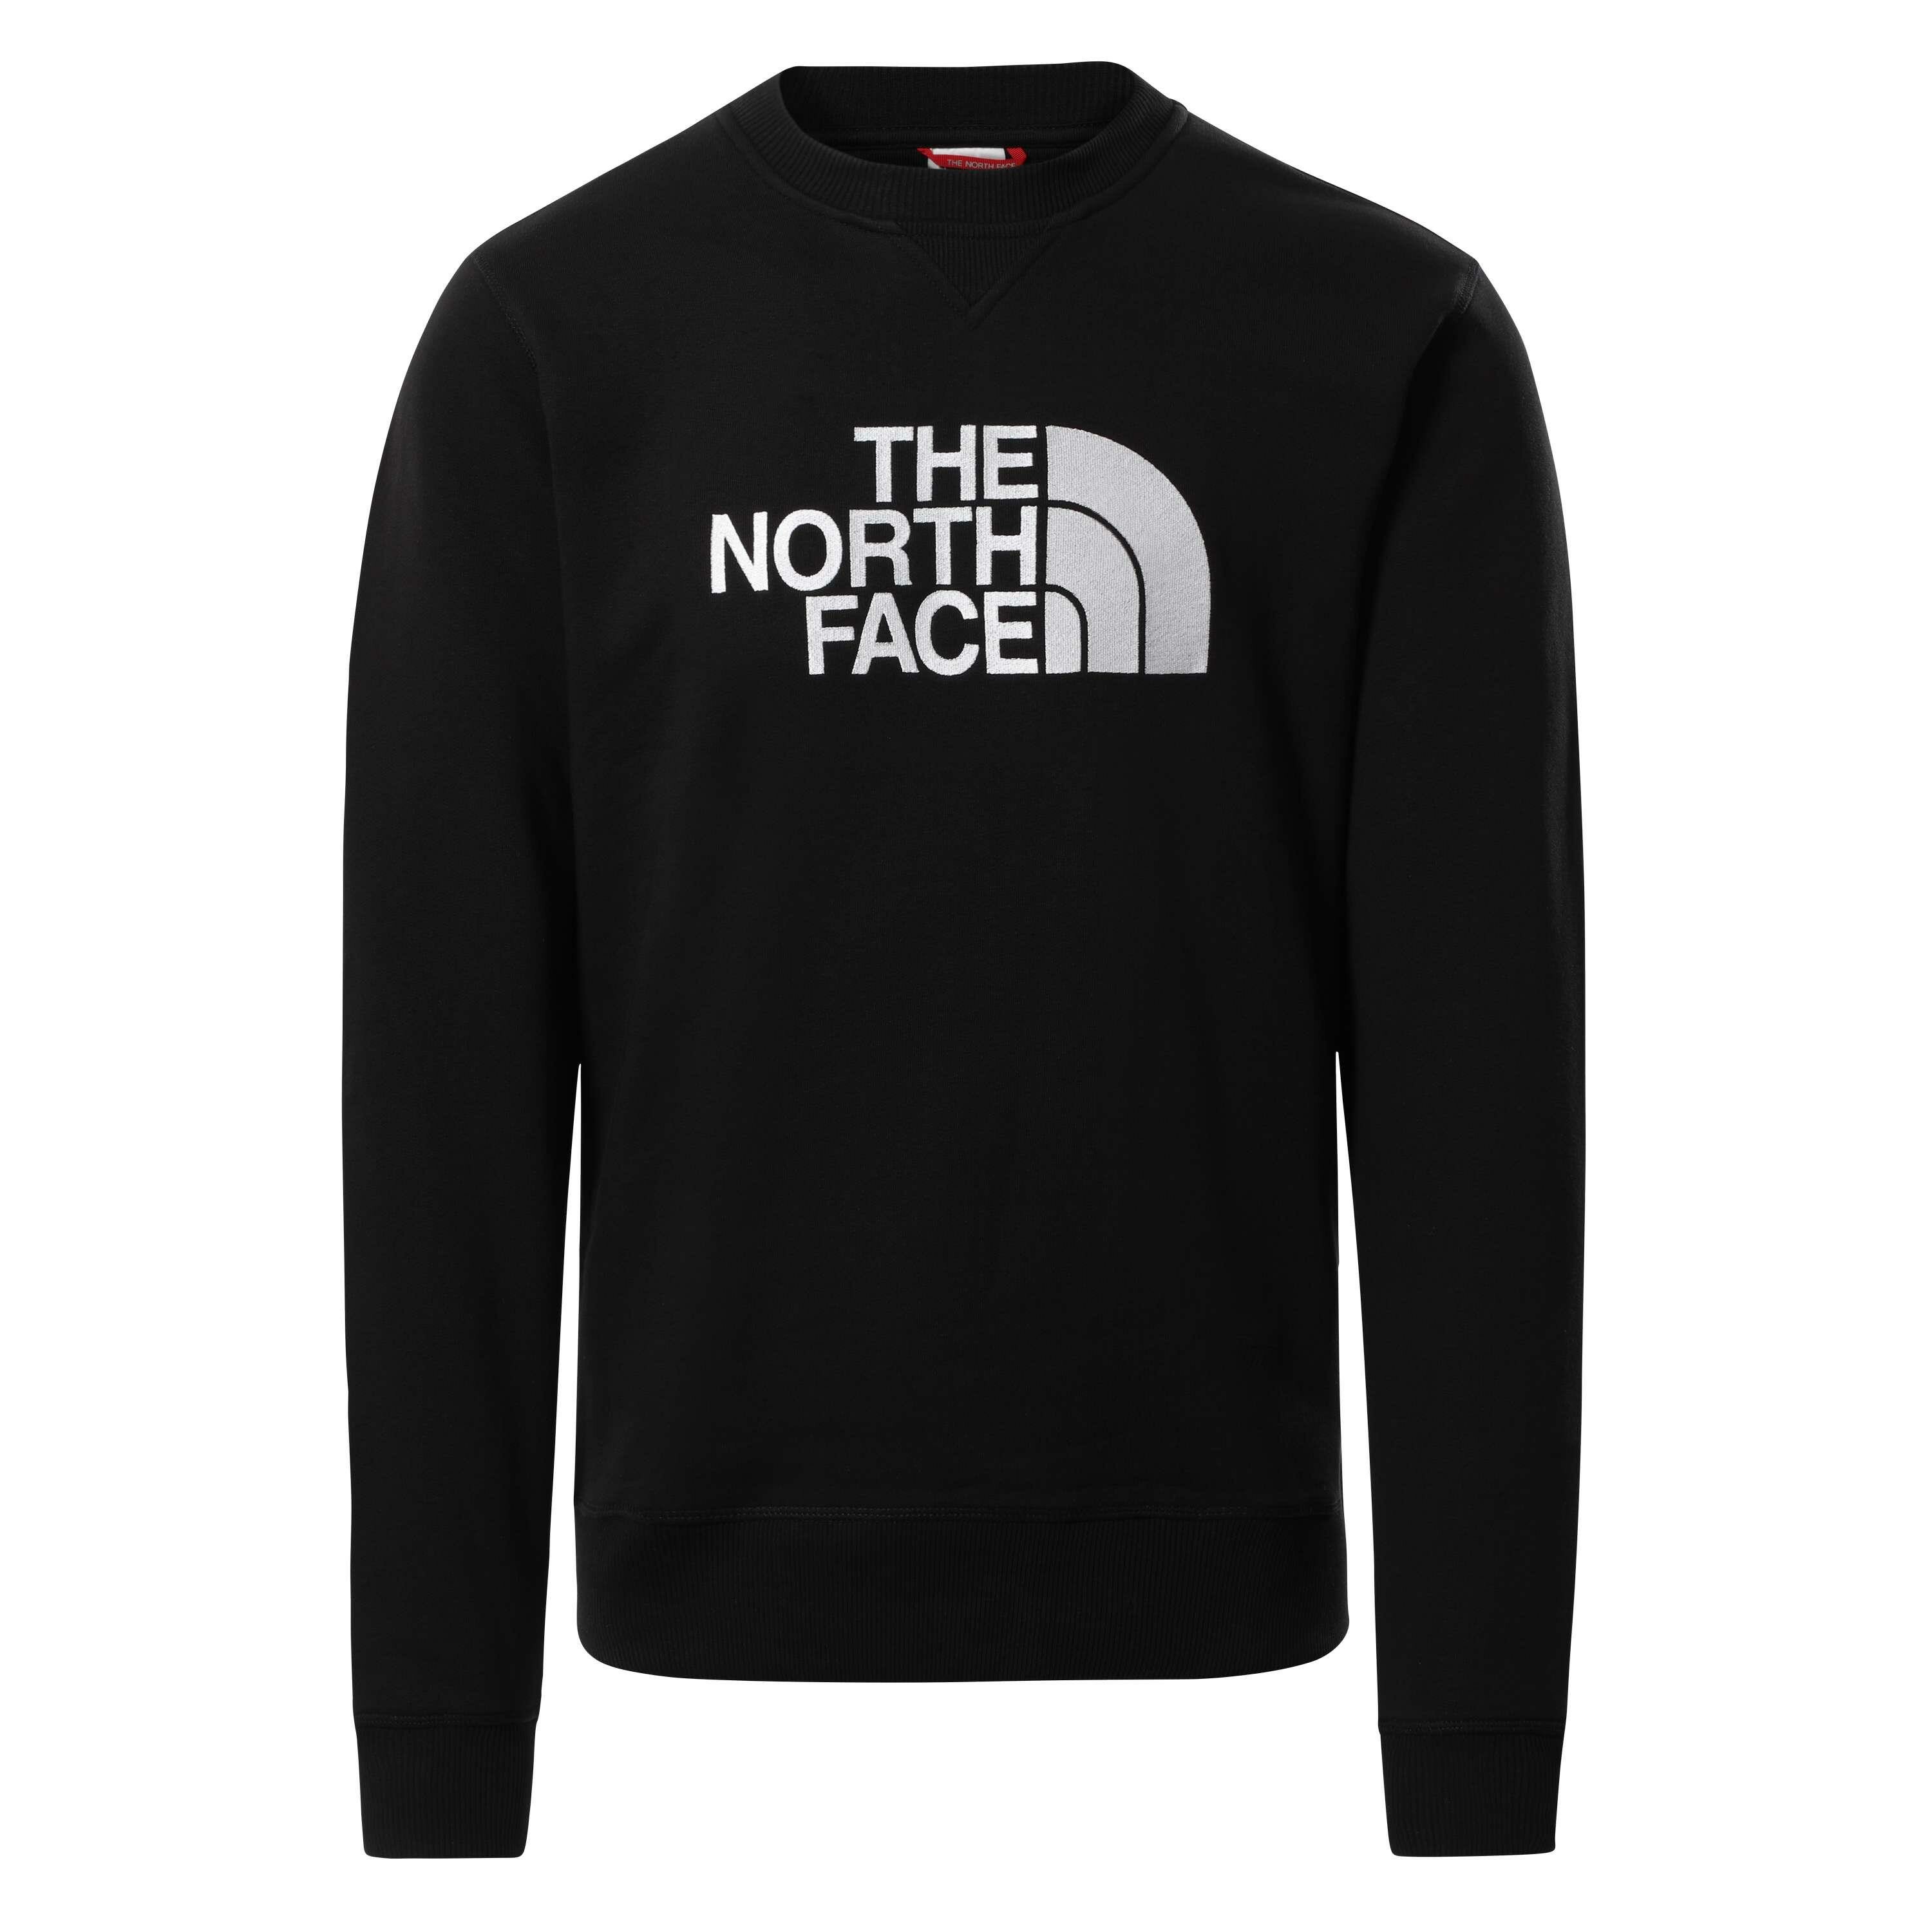 vervolging baai Slechthorend The North Face Drew Peak sweater heren TNF black TNF white